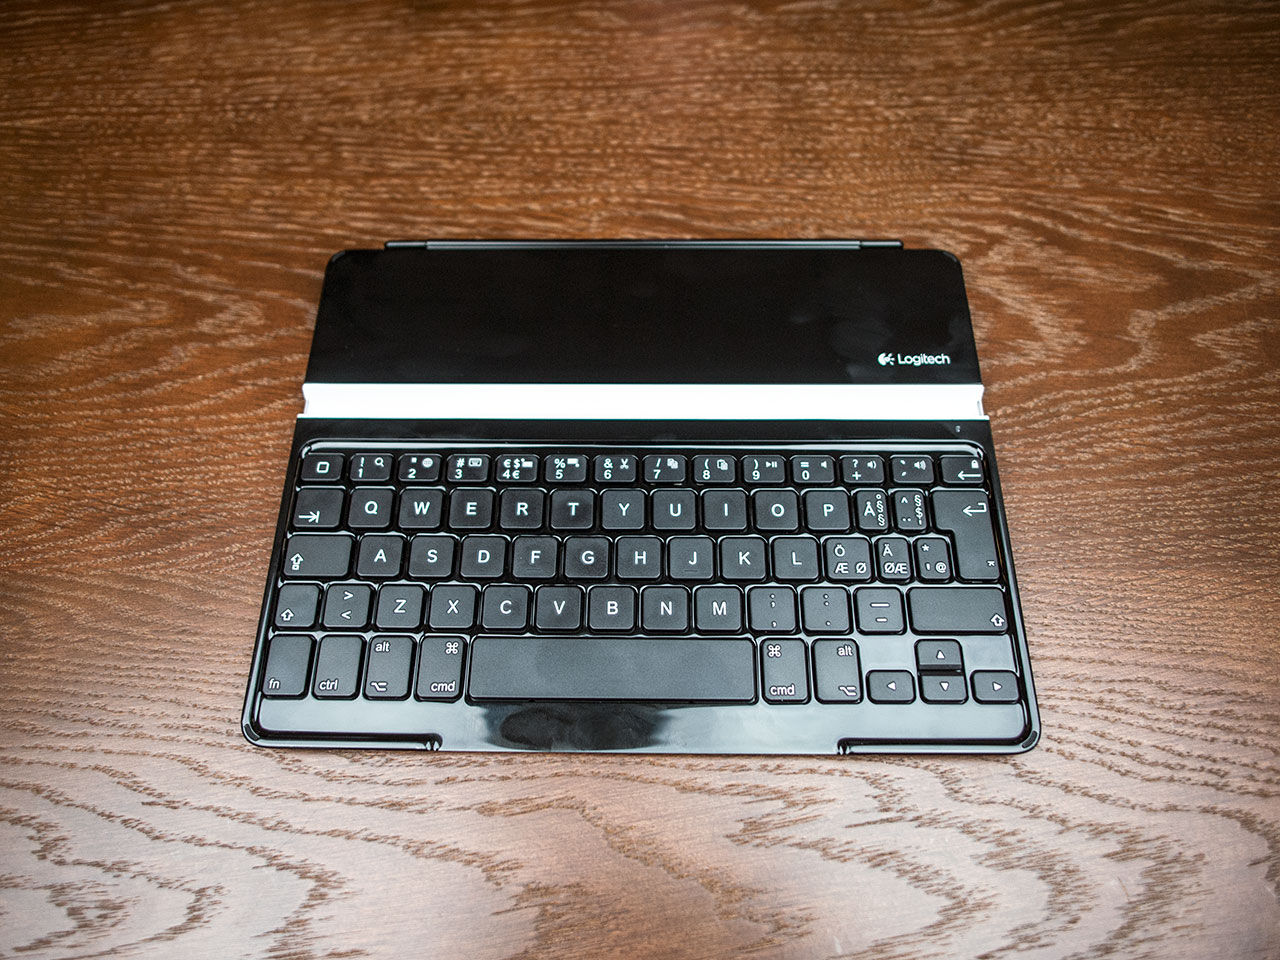 Logitech har gjort ett trevligt tangentbord till iPad